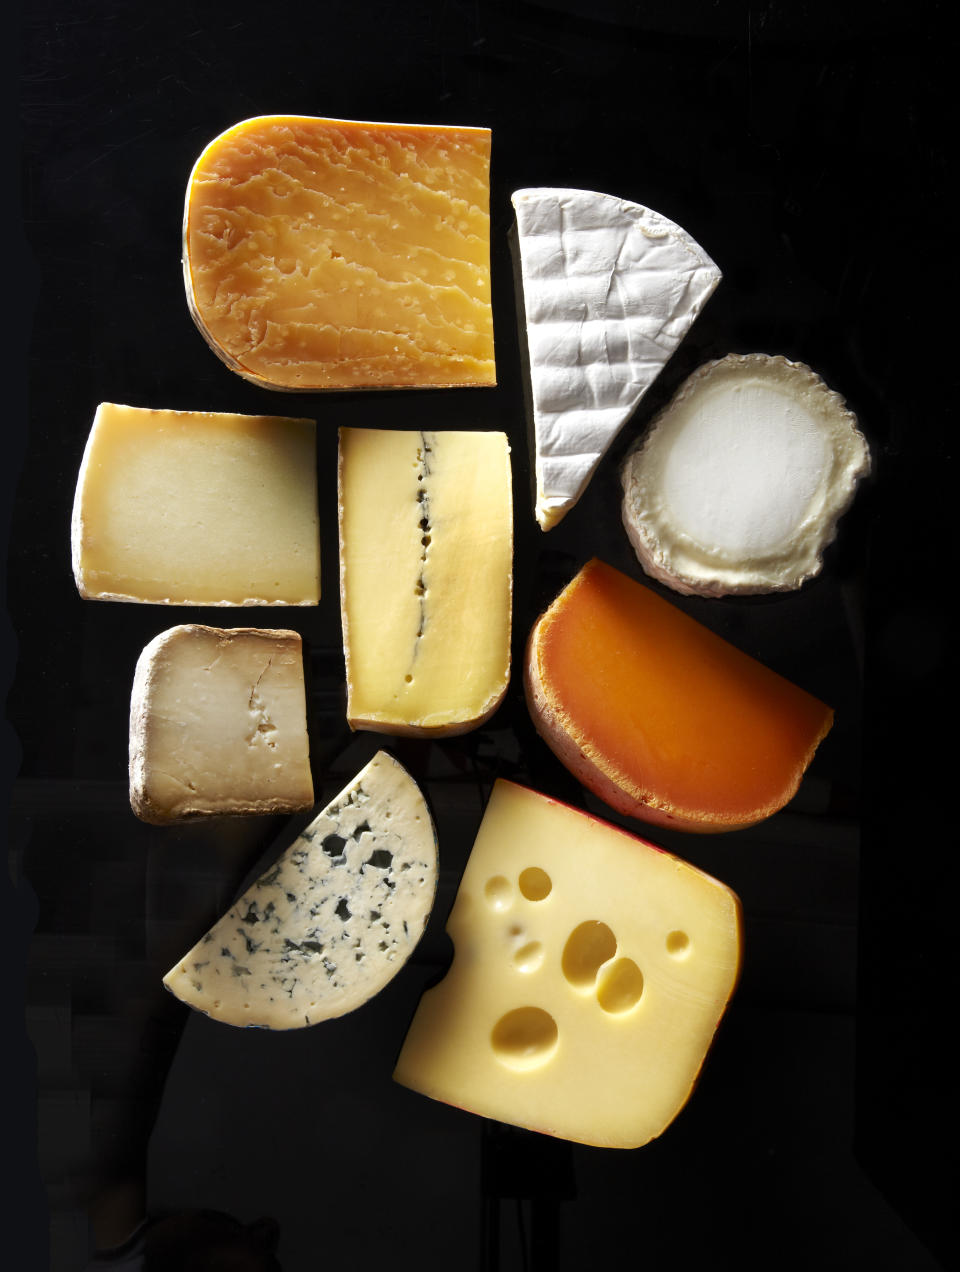 Los quesos son una fuente de Vitamina D aunque no se debe abusar de ellos pues también son ricos en grasas saturadas (Foto: Getty)